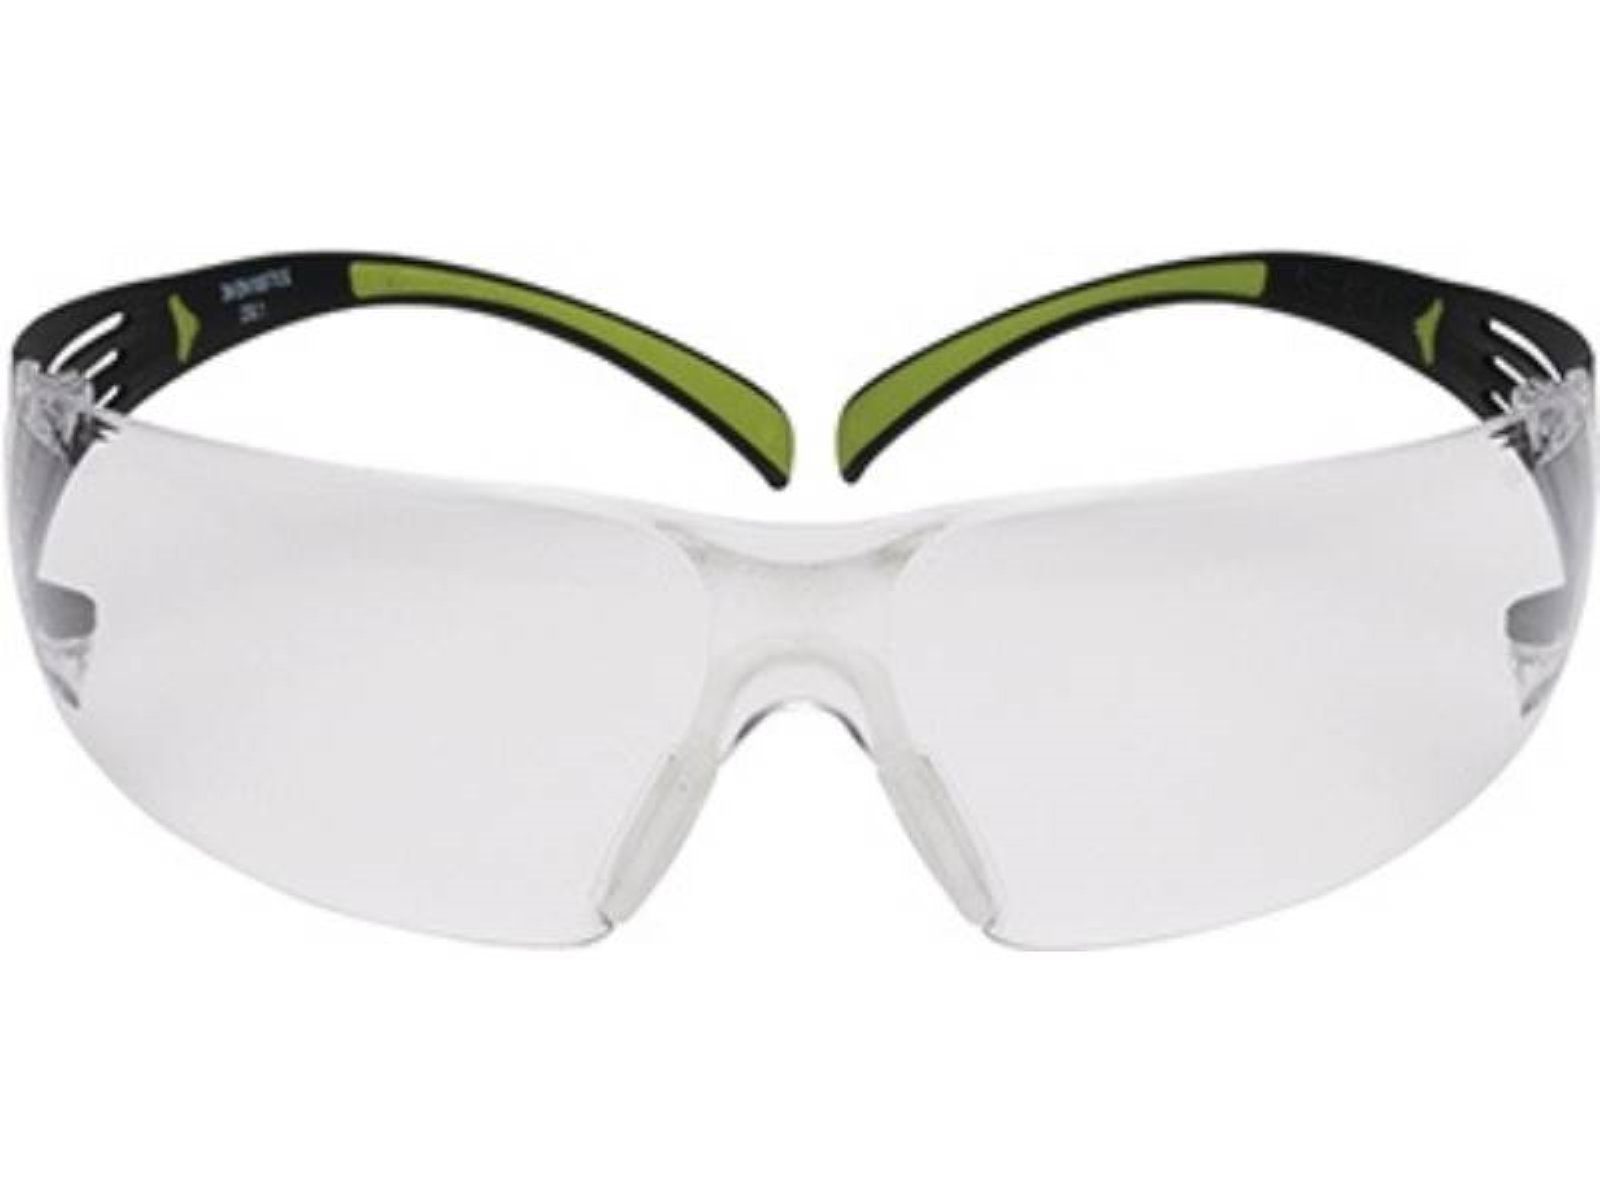 3M Arbeitsschutzbrille Schutzbrille Reader SecureFit™-SF400 EN 166 Bügel schwarz grün,Scheibe klar +2 EN 166 (AS/AF-EU) · die rahmenlose Scheibe enthält im unteren Bereich einen Lesebereich (in den Stärken +1,5 - + 2 - +2,5 Dioptrien erhältlich), um Detailarbeit zu vergrößern ·